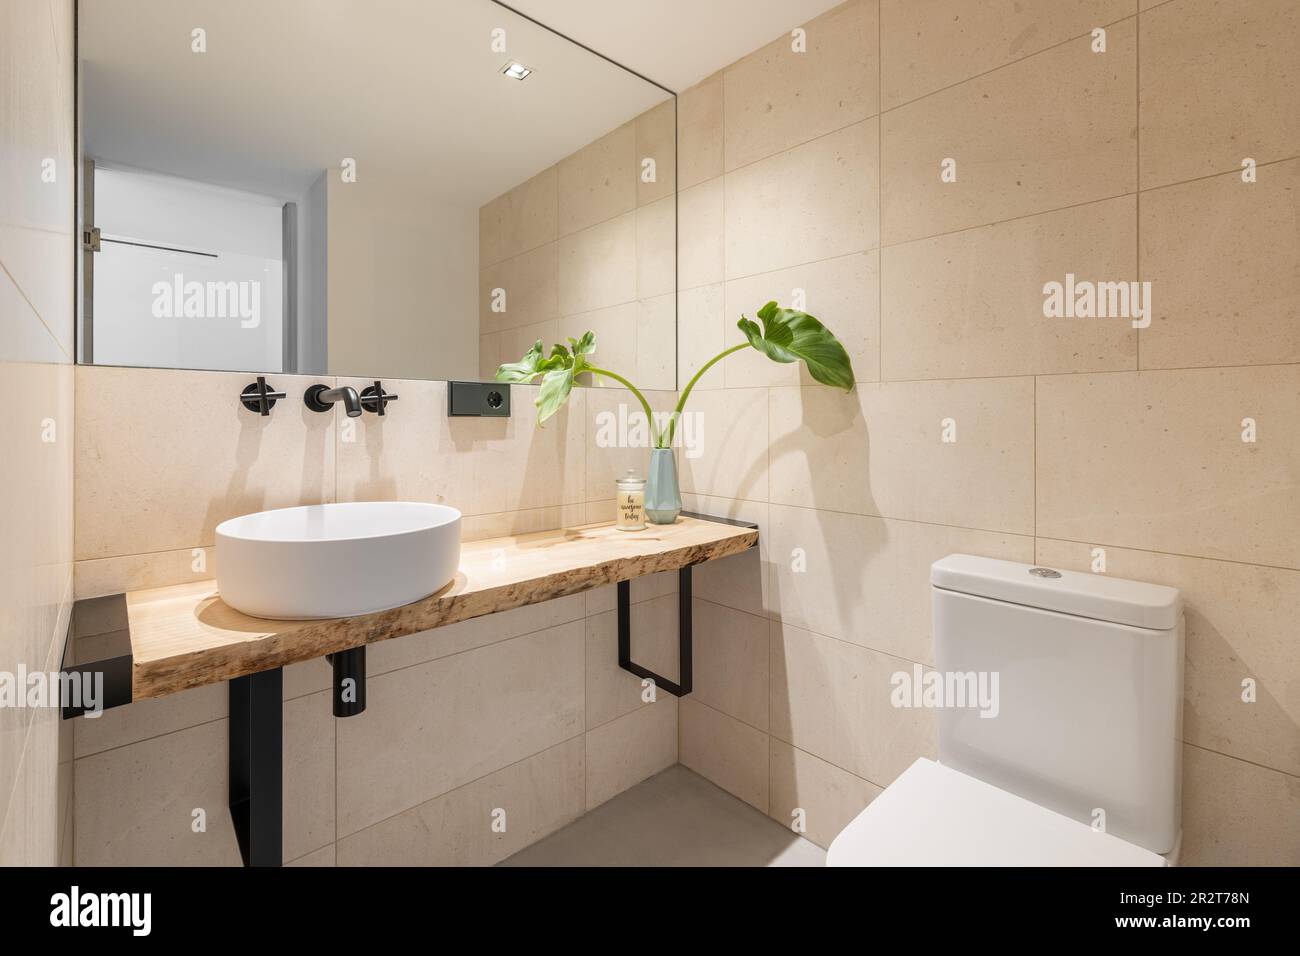 Elegante cuarto de baño luminoso con azulejos de color beige en las paredes  y un gran espejo con un lavabo en una encimera de madera y un inodoro. El  concepto de lo